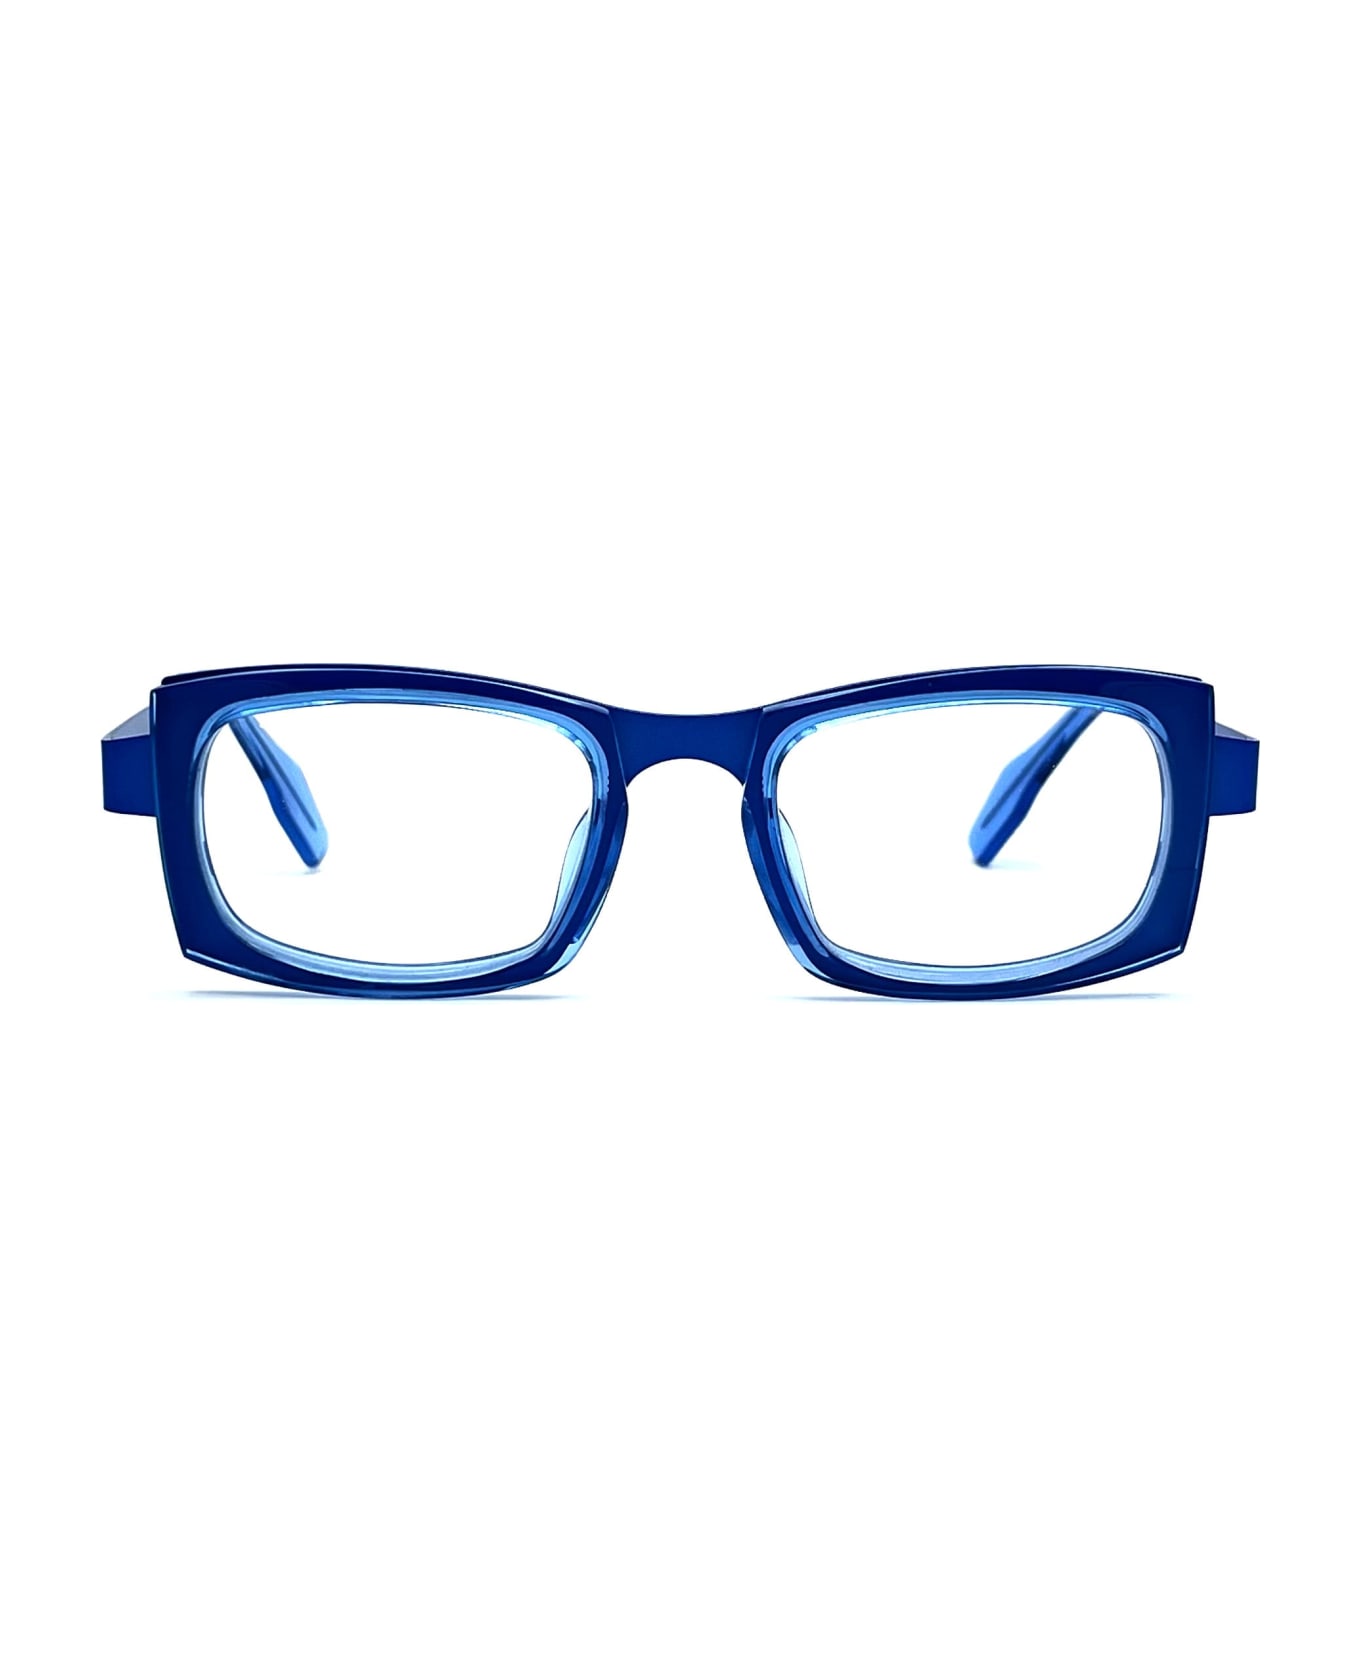 Theo Eyewear Maui - 7 Glasses - blue アイウェア